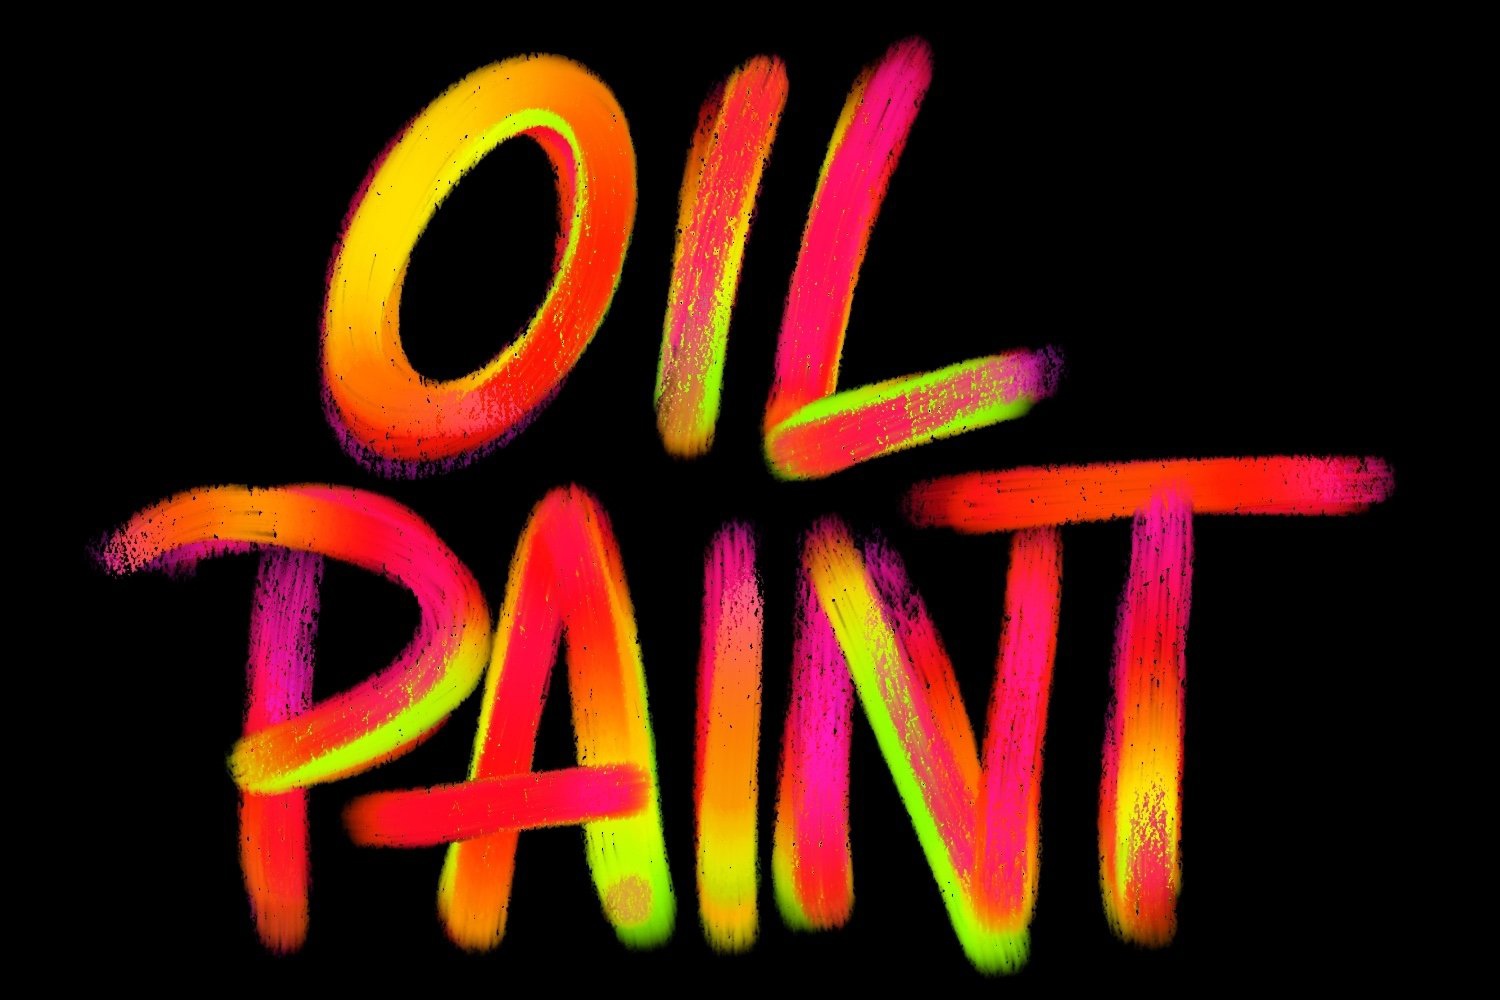 Procreate_Brushset_-_Oil_Paint_Brushes